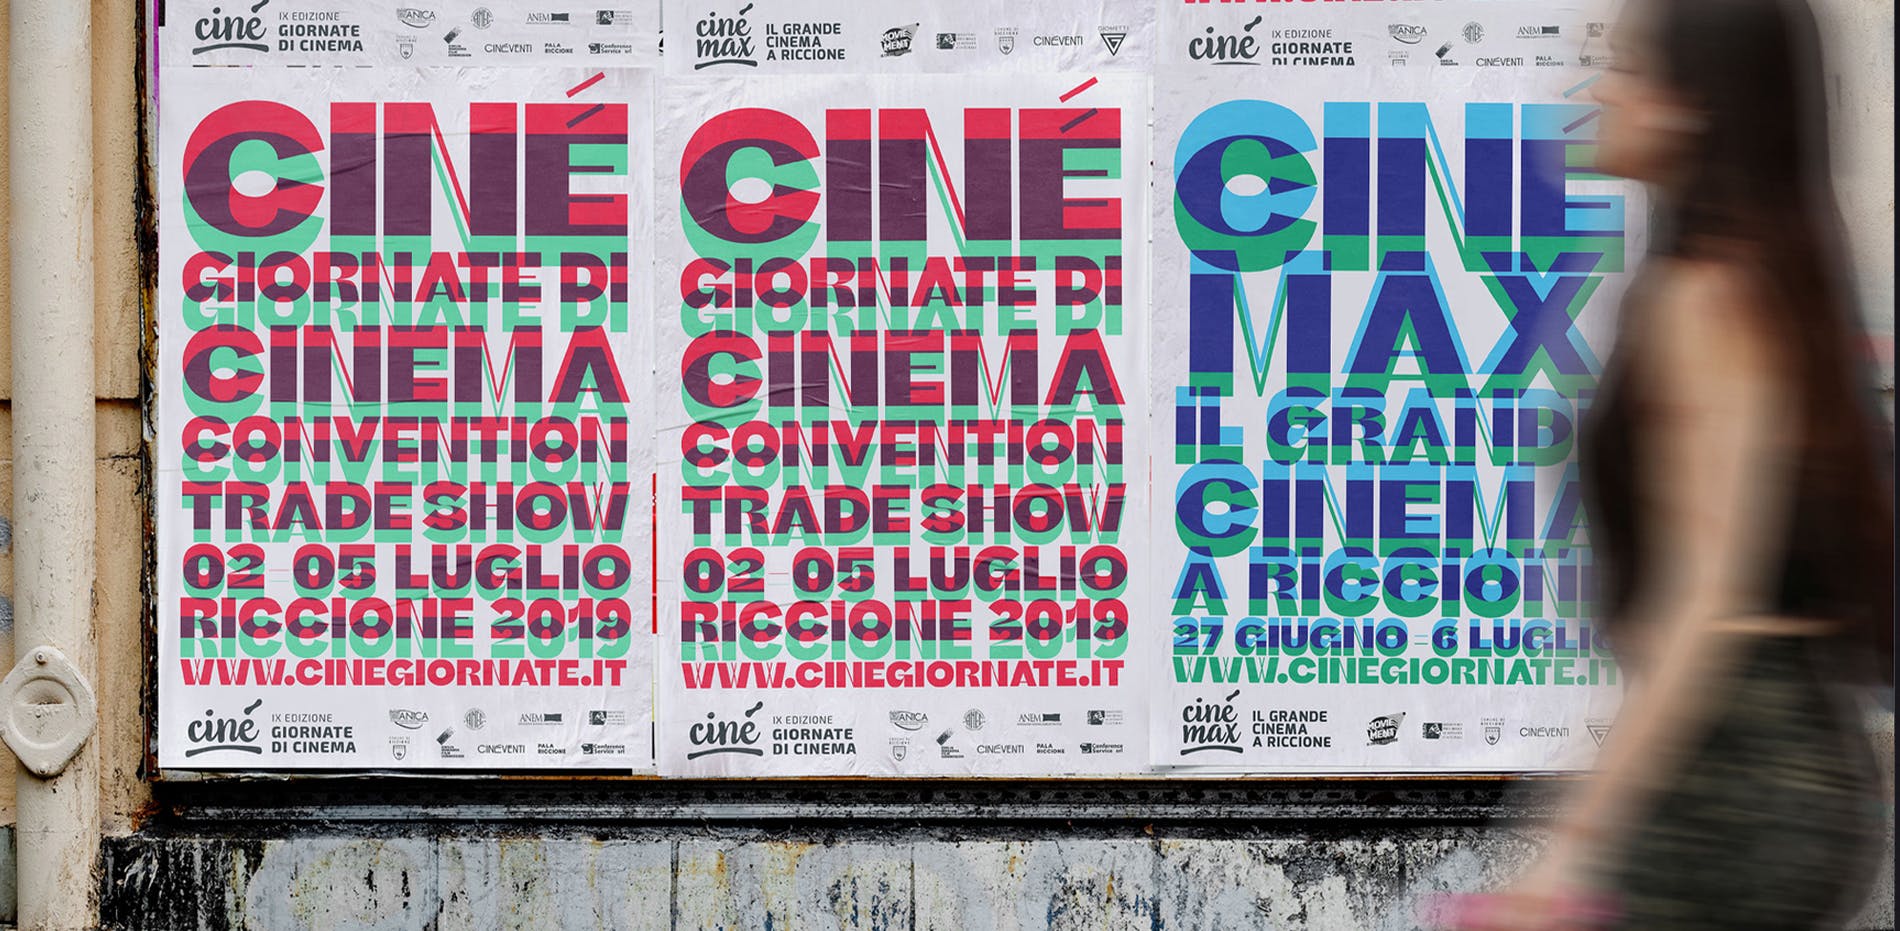 Cinegiornate is an annual cinema festival in Riccione, Italy